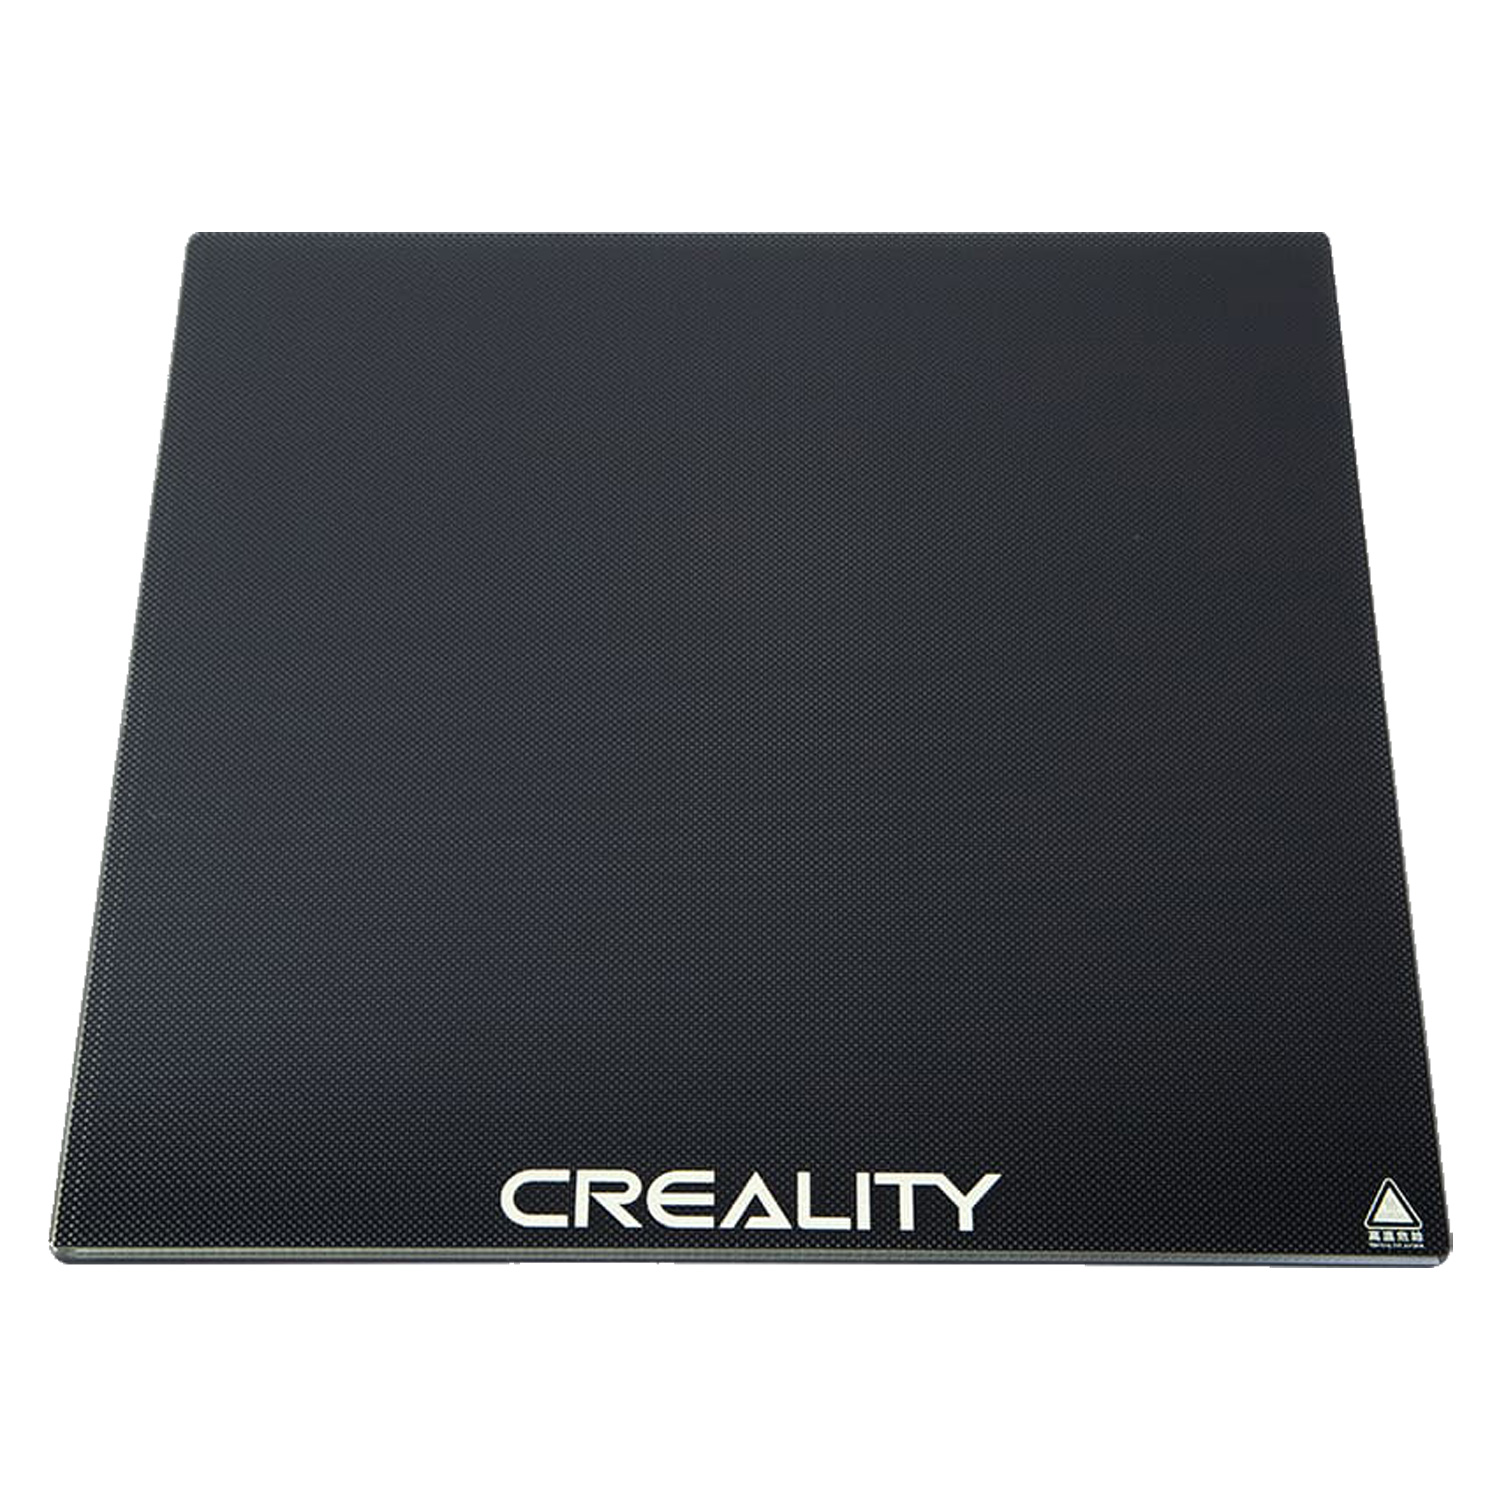 Plataforma de Vidro Creality Carborundum para Impressora 3D CR-6SE